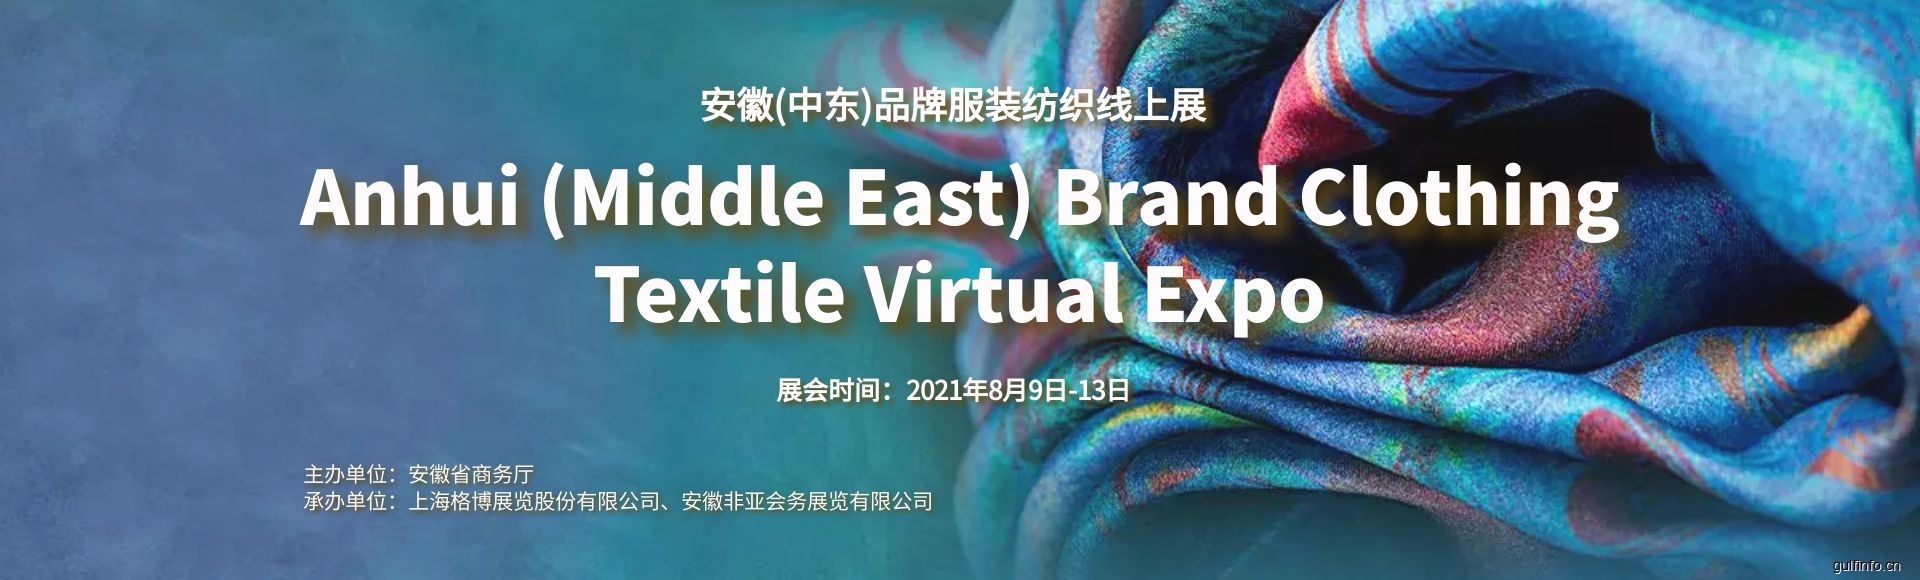 2021安徽(<font color=#ff0000>中东</font>)品牌服装纺织线上展即将启动